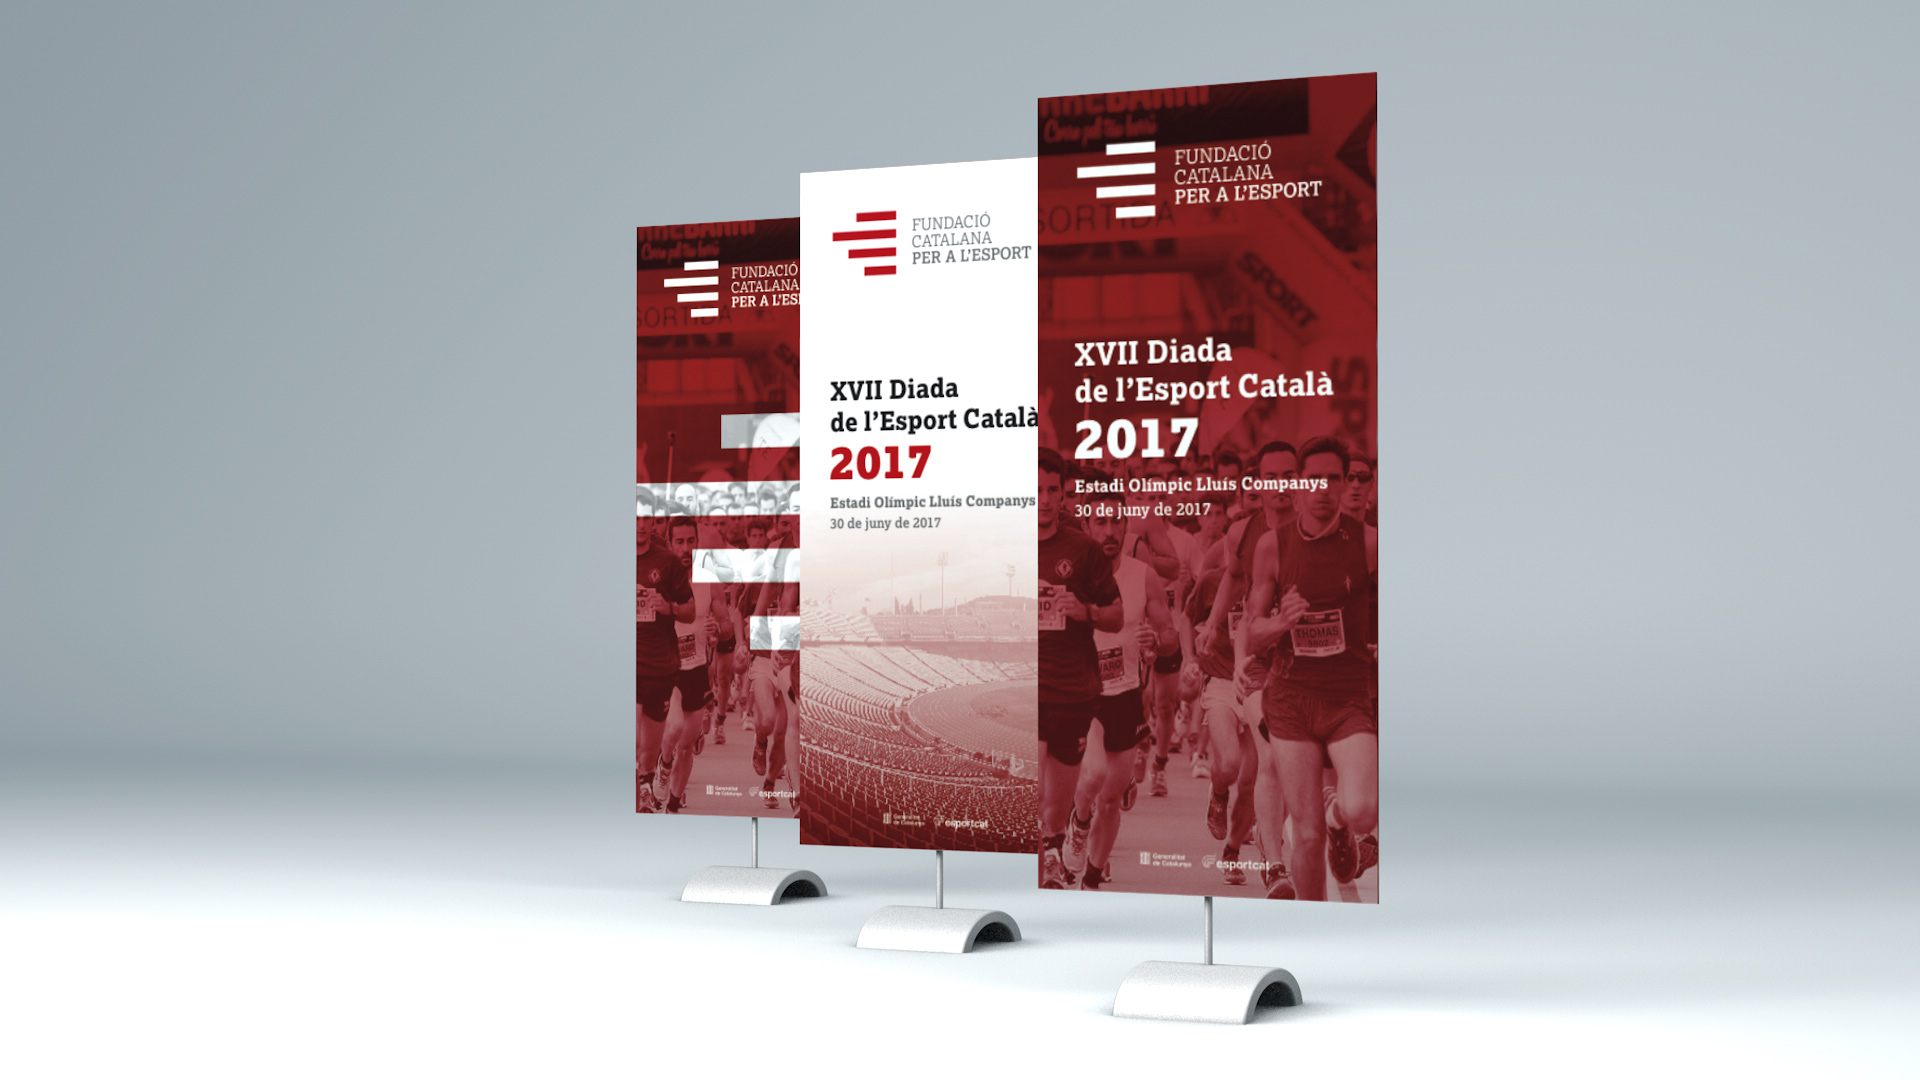 Diseño marca e identidad corporativa Fundació Catalana per a l'Esport - Rollup